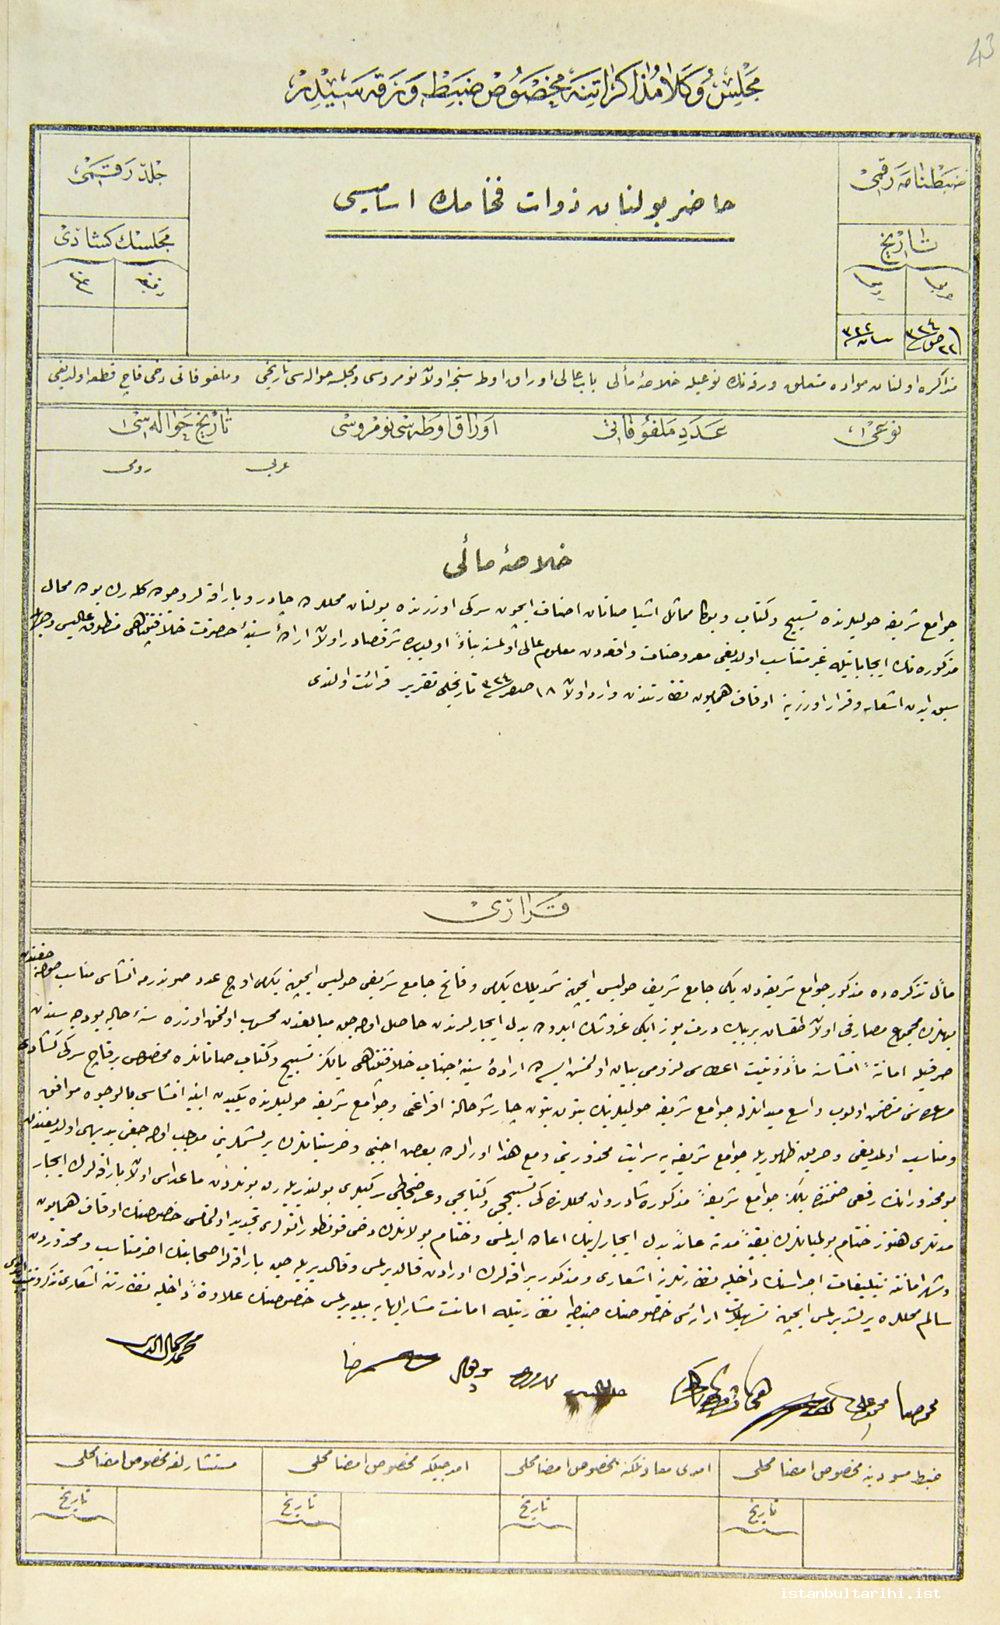 4- Fatih ve Yeni Cami başta olmak üzere, cami avlularında tespih ve kitap satanlar dışında bütün barakaların yıktırılmasına dair 17 Nisan 1906 tarihli Meclis-i Vükela kararı (BOA, MV, nr. 113/43)